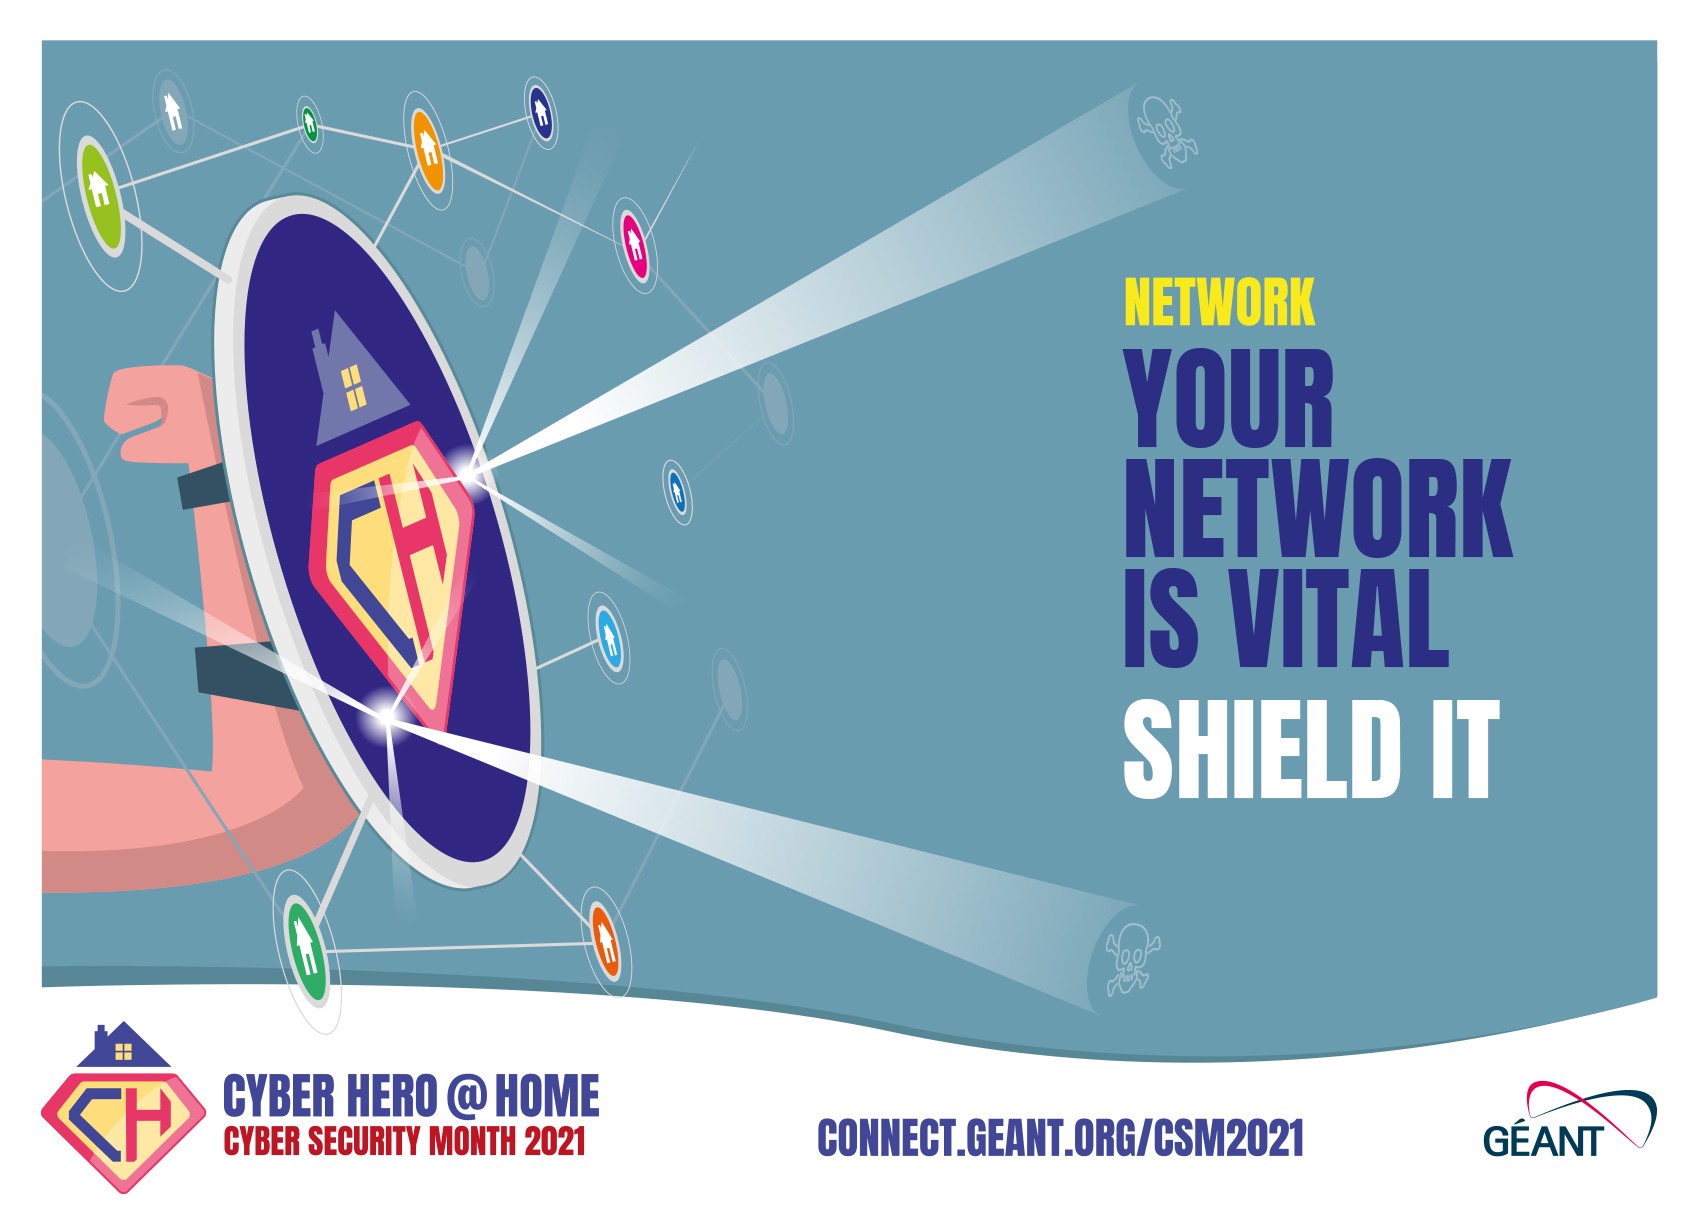 Campagnebeeld voor het thema 'Protect your network"